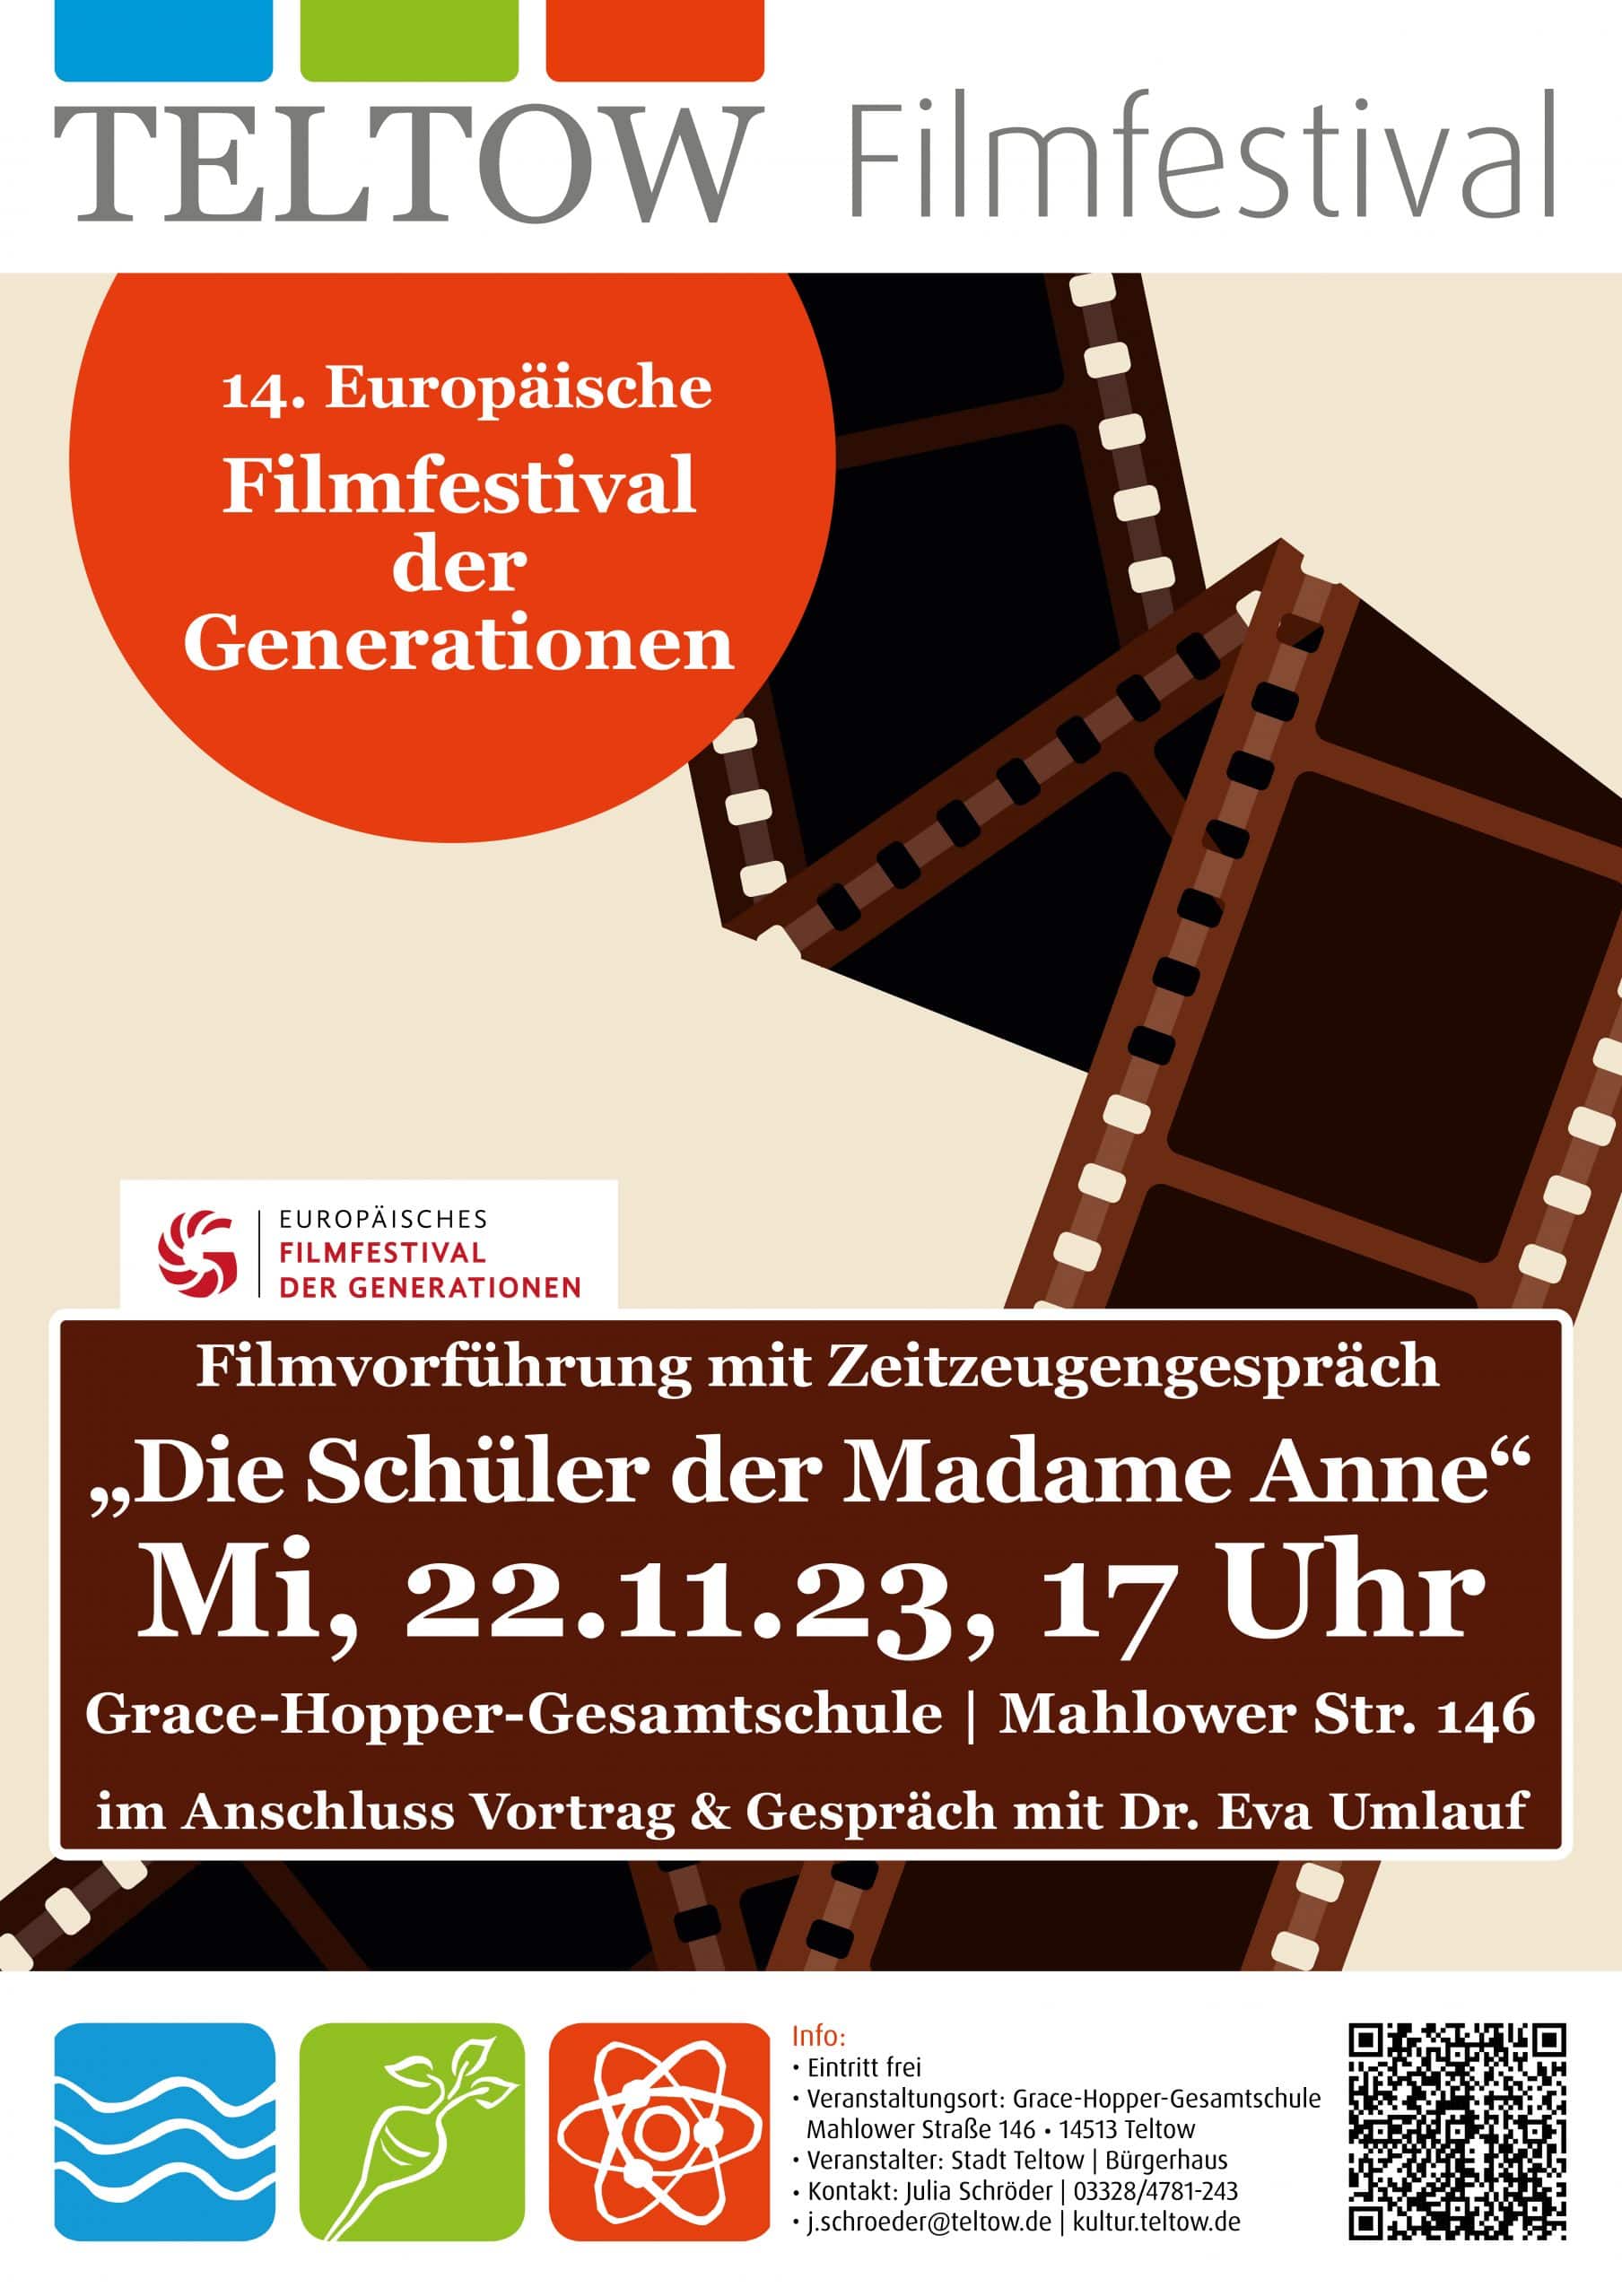 14. Europäisches Filmfestival der Generationen an der GHG